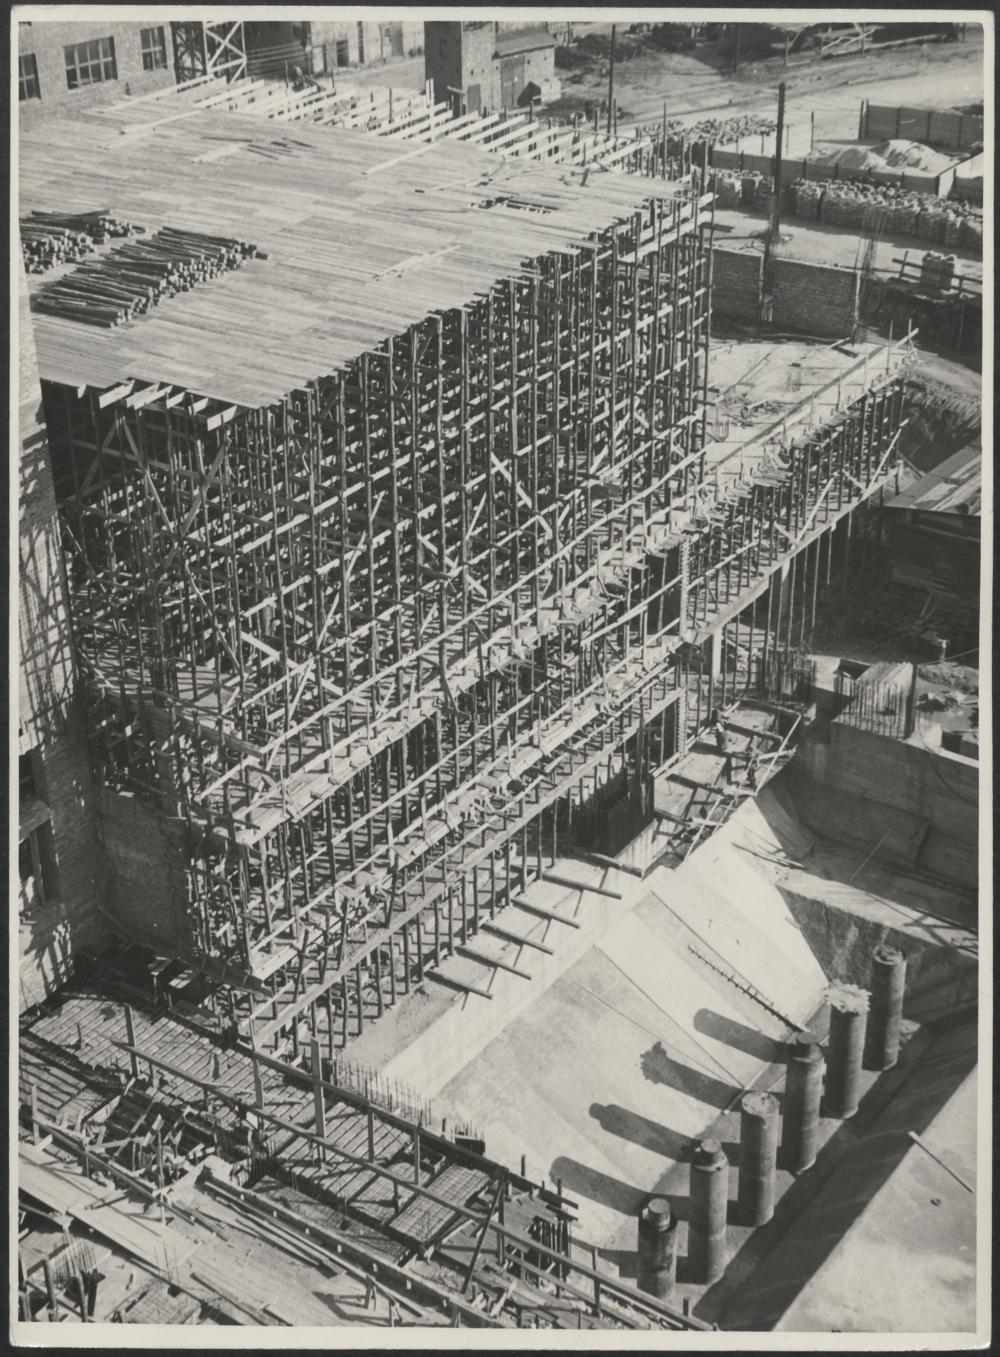 Fotografie z realizacji odbudowy Teatru Wielkiego ze zniszczeń wojennych.